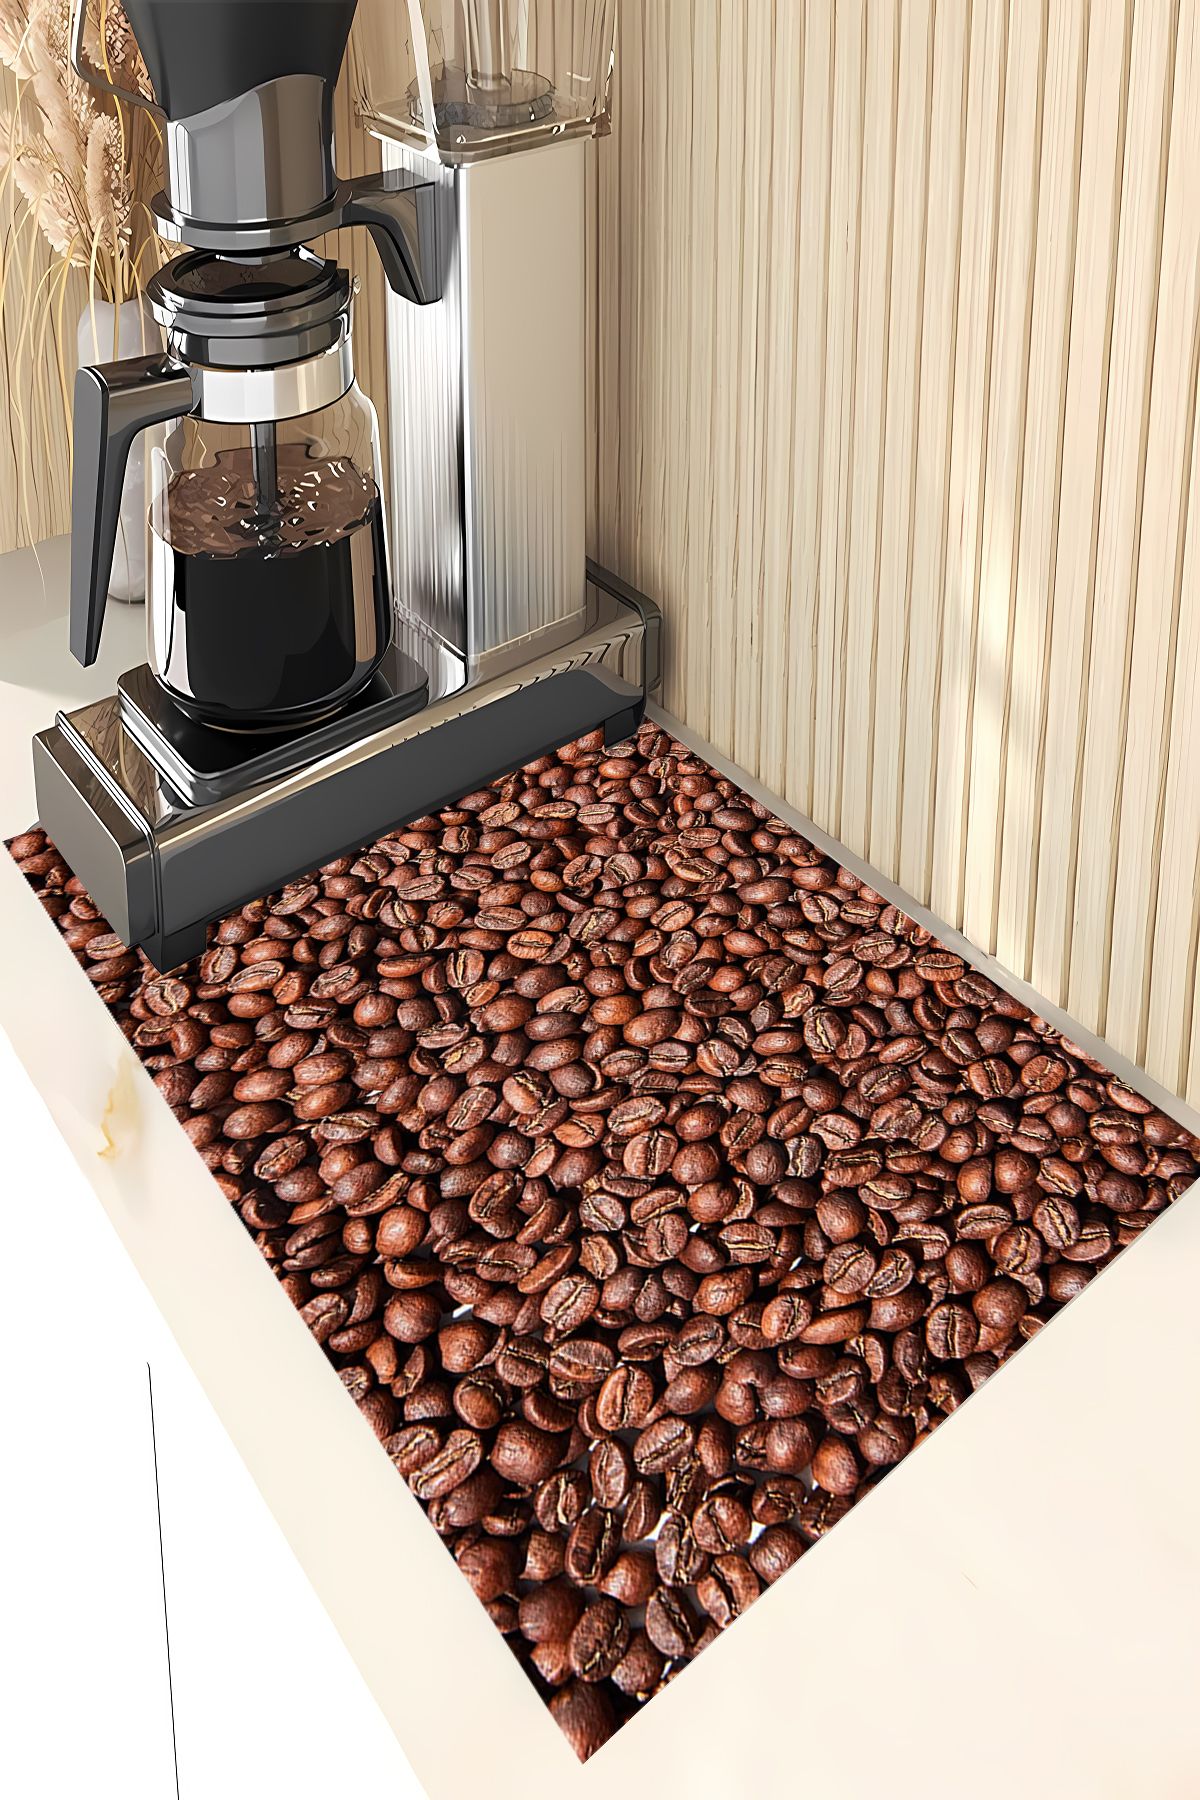 SÜNGERSAN Bulaşık Kurutma Örtüsü Bulaşıklık Kahve Makinesi Matı Tezgah Üstü SuEmici Bulaşık Örtüsü Tamper Matı